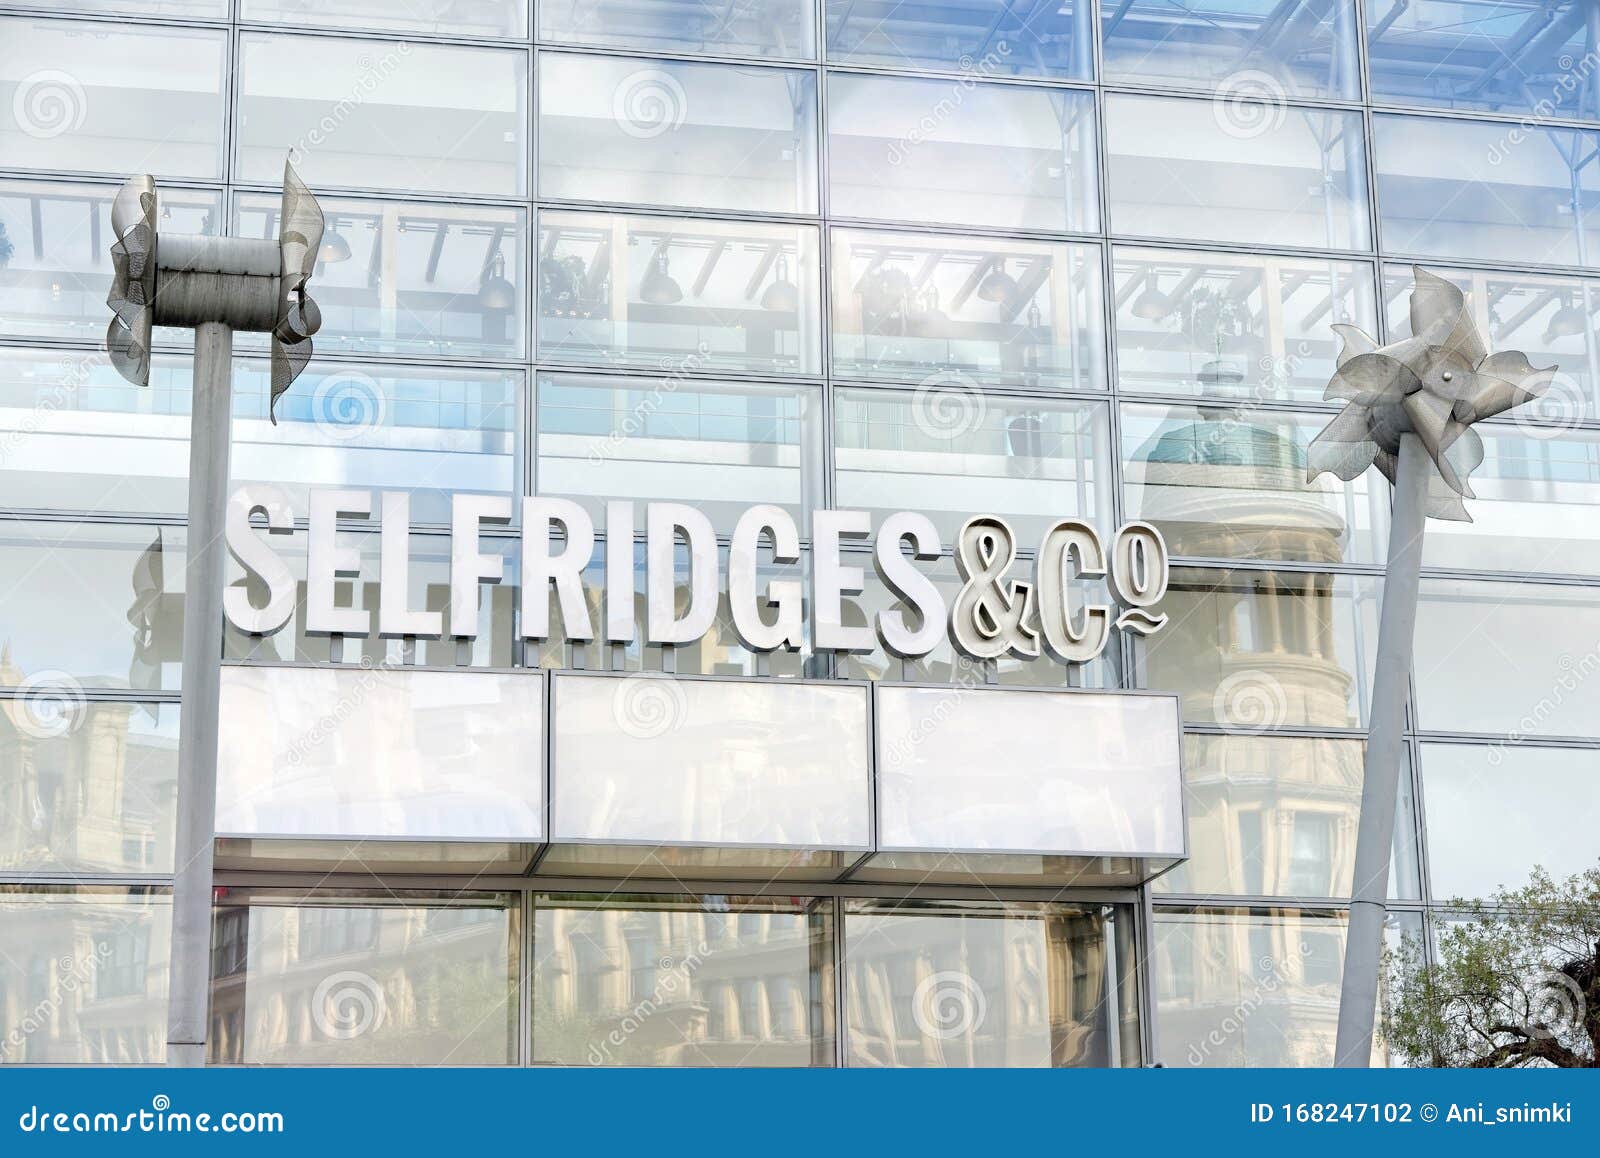 Selfridges Manchester